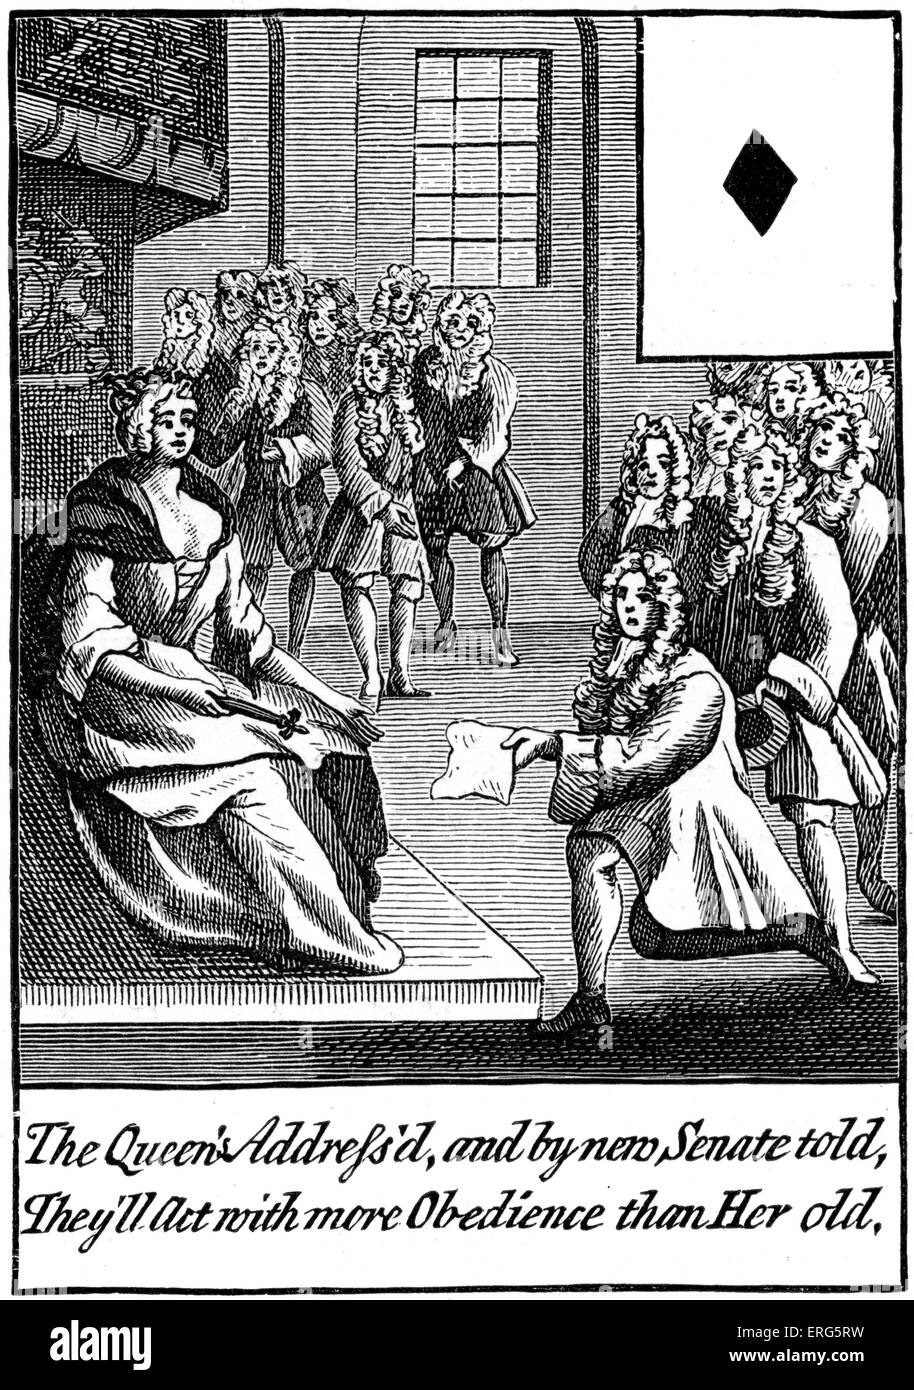 La conception de cartes, 1710. Sous-titre suivant : 'La reine Anne avait l'adresse, et par nouveau Sénat dit, ils vont agir avec plus d'Obéissance Banque D'Images